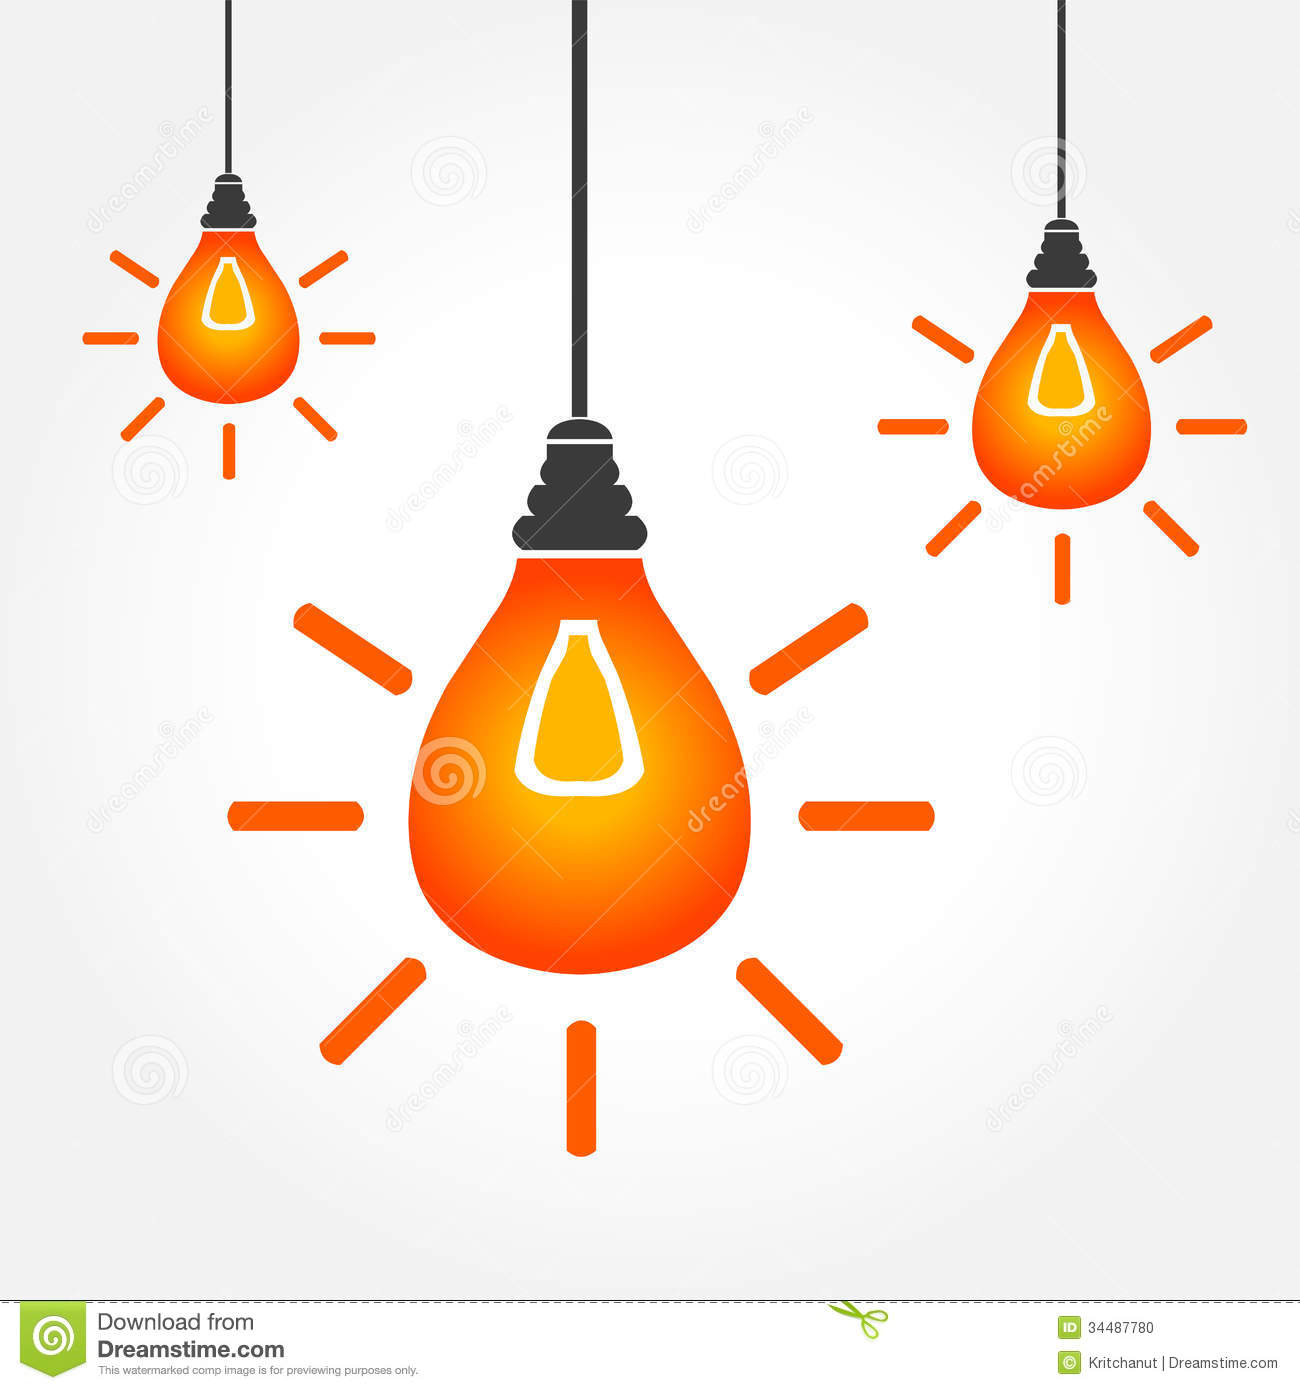 Hanging light bulbs clipart.